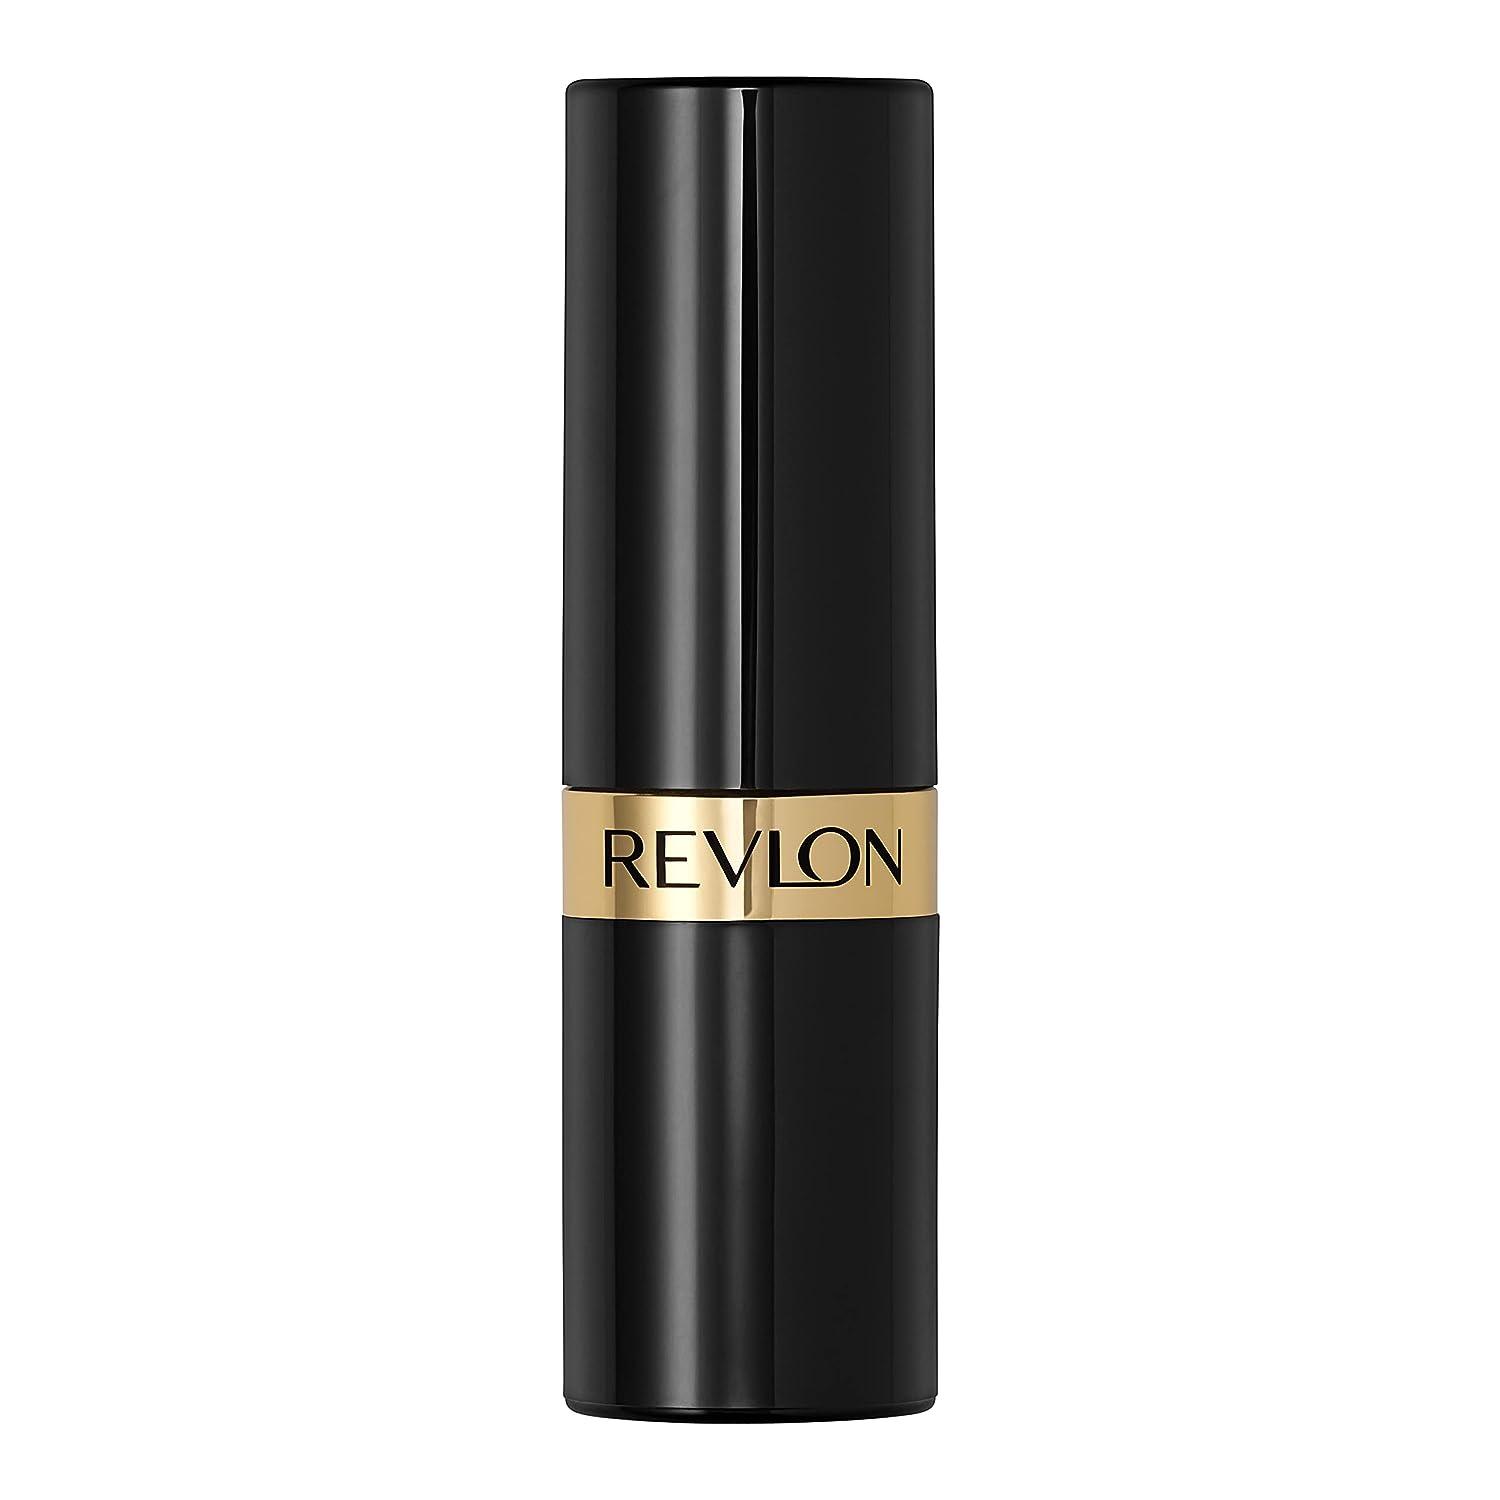 Revlon Super Lustrous Lipstick with Vitamin E and Avocado Oil Pearl  Lipstick in Purple 467 Plum